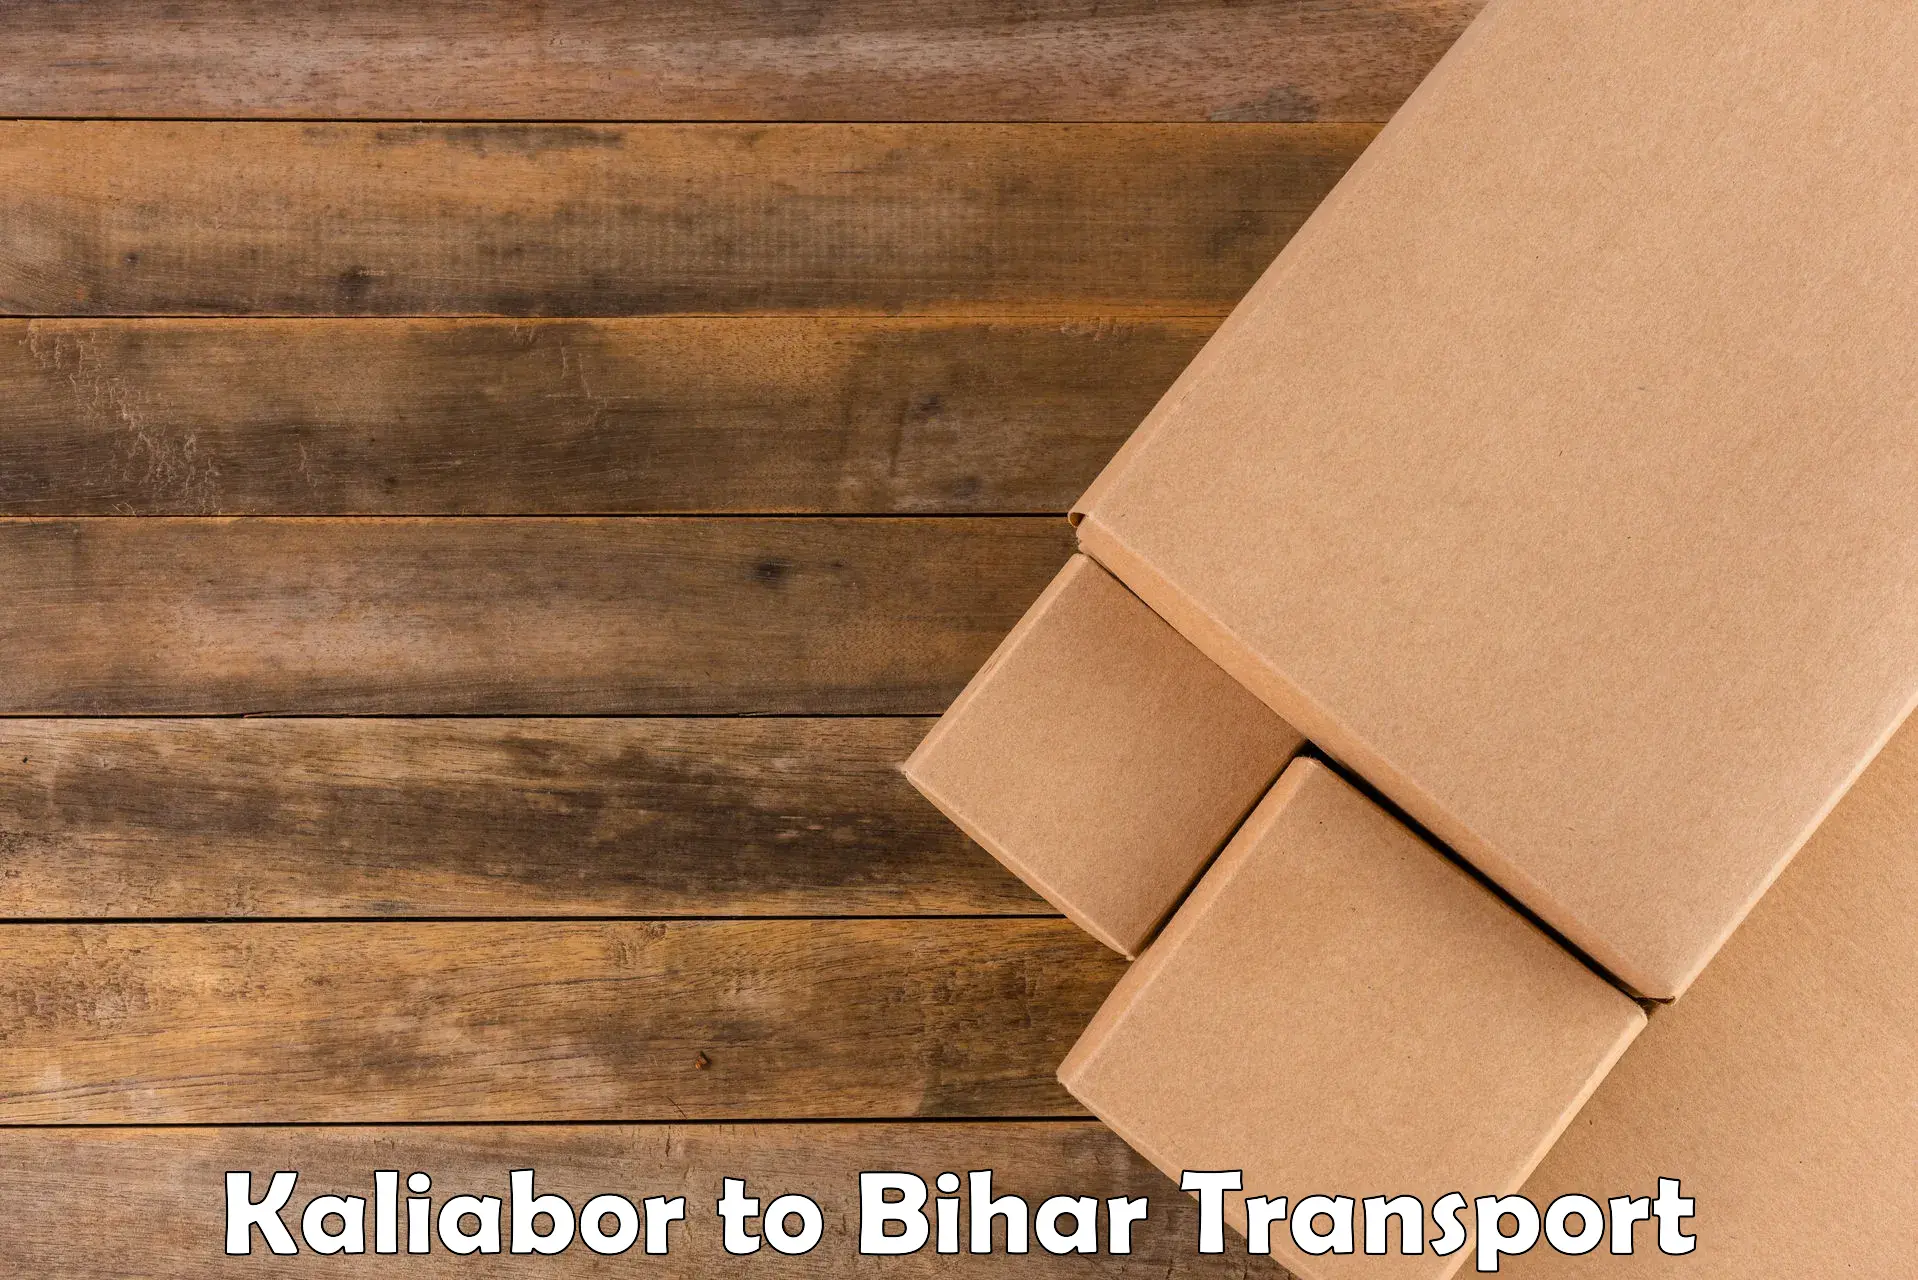 Furniture transport service Kaliabor to Dinara